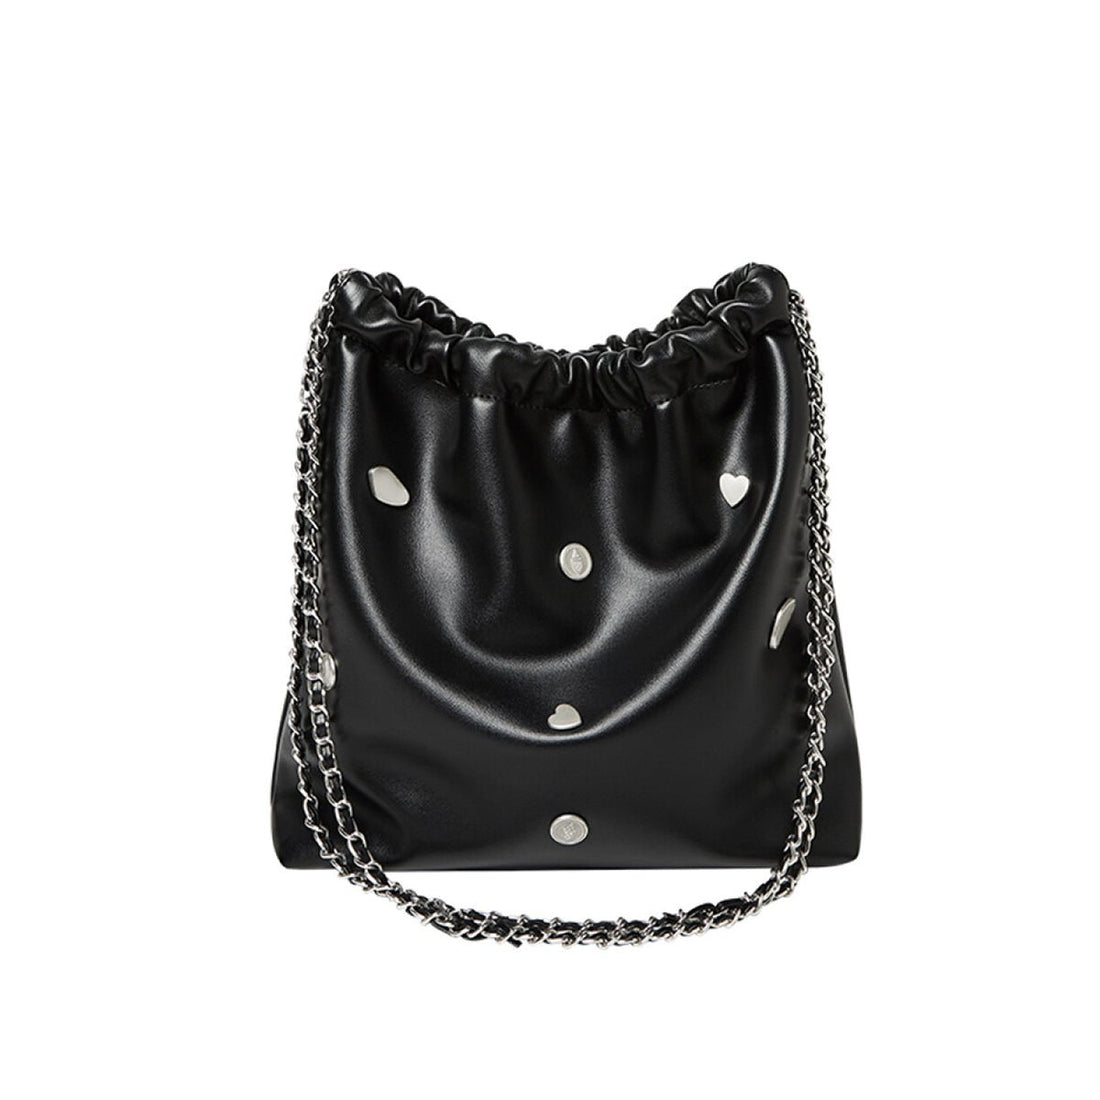 Black Rivet Studded Leather Tote Bag - 0cm